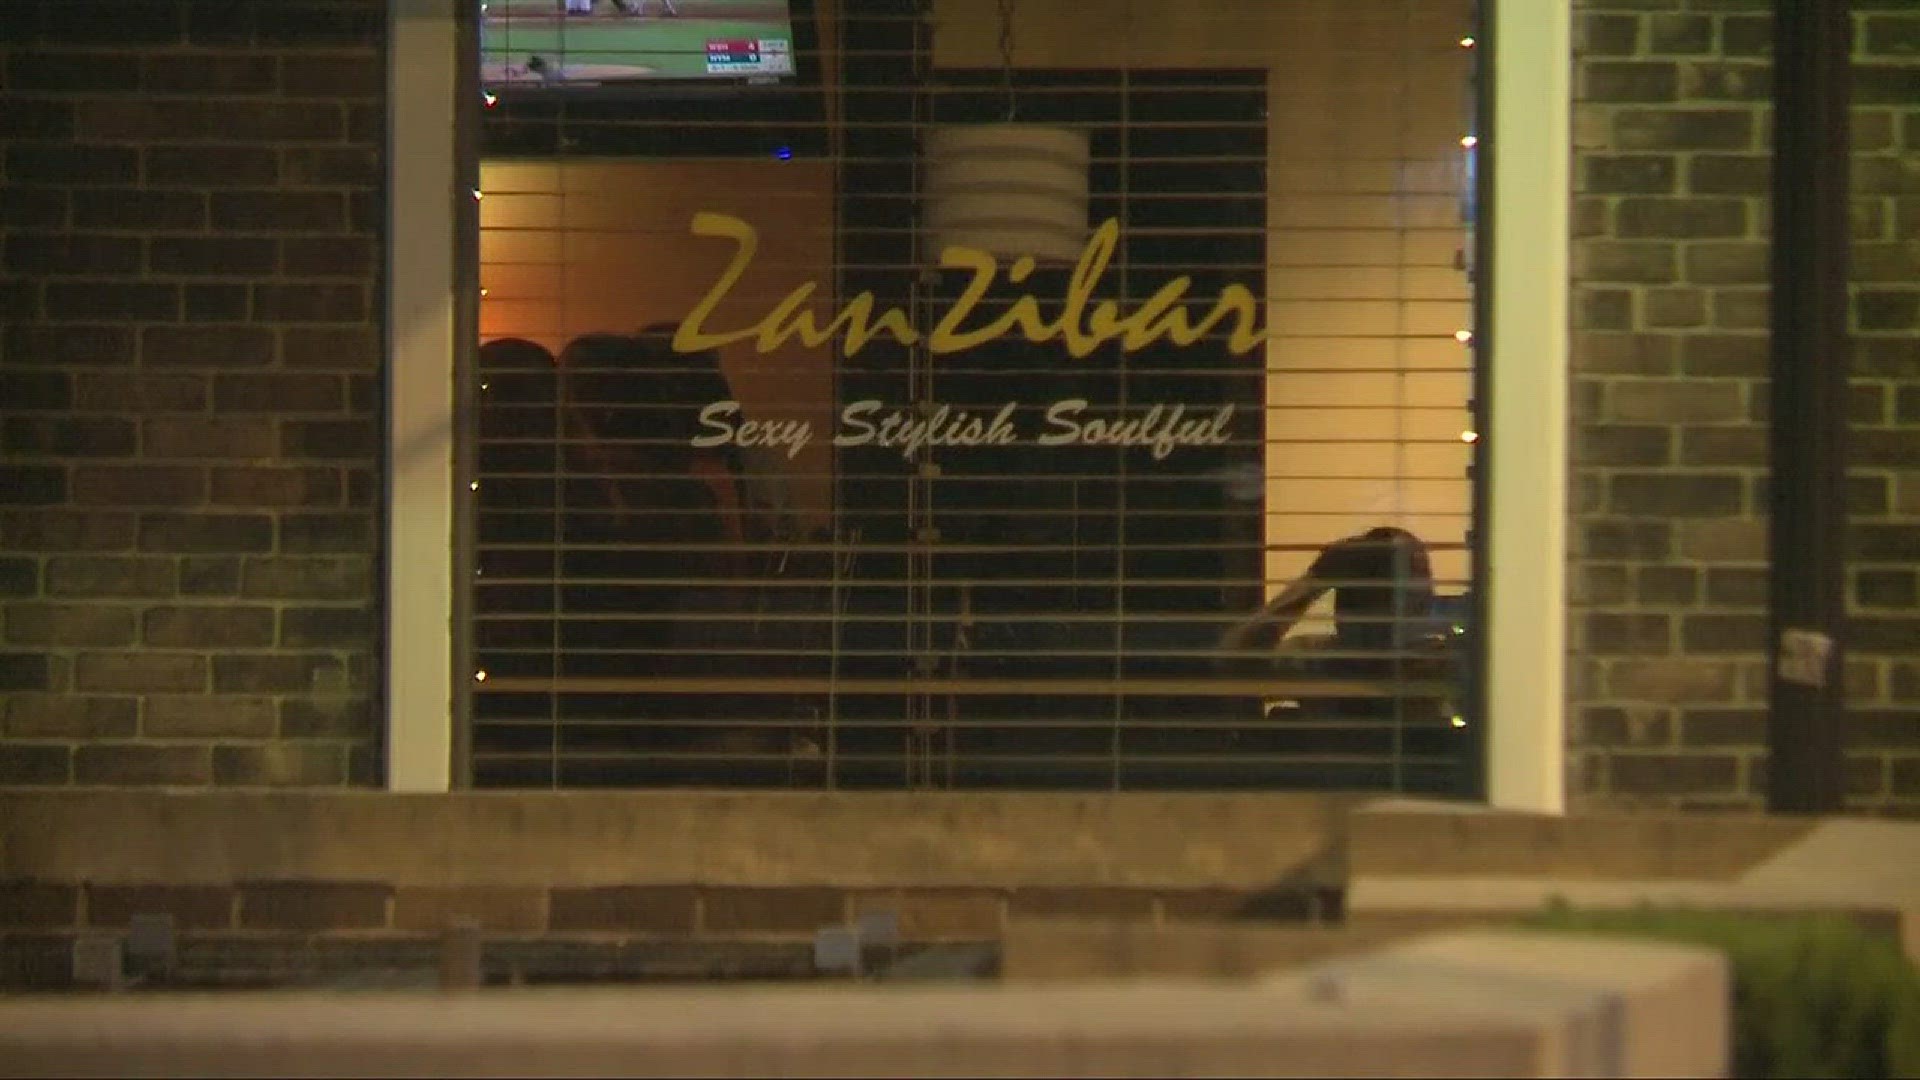 Shaker Square restaurant owner shot leaving work